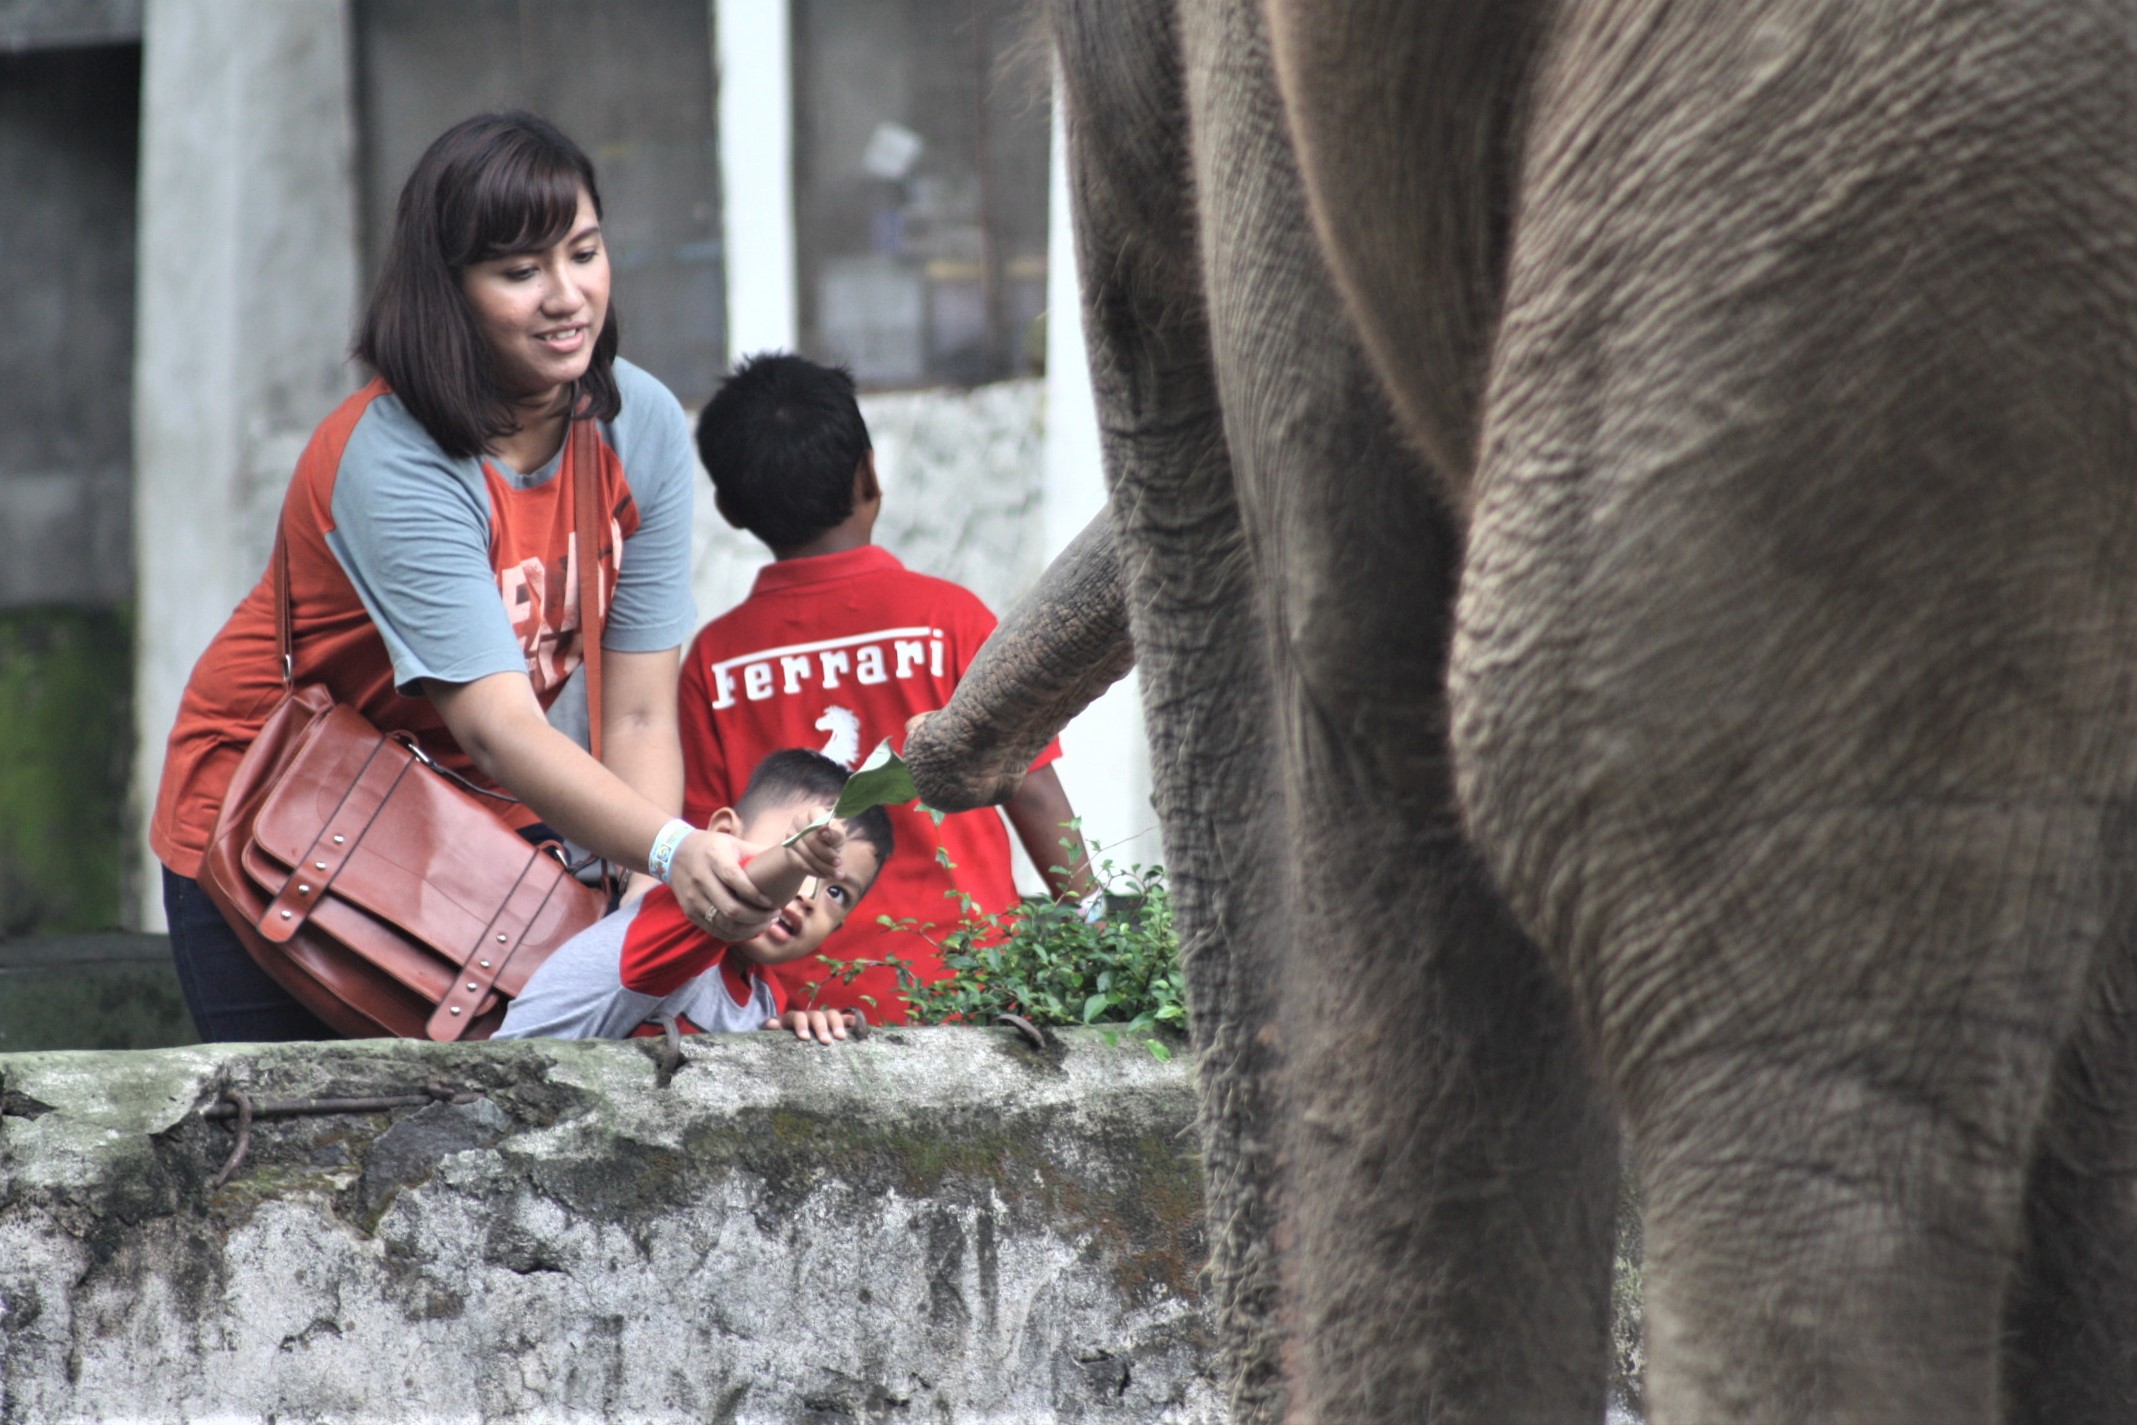 Pengunjung berinteraksi dengan gajah di Gembira Loka Zoo, sebelum pandemi. Foto: Nuswantoro/ Mongabay Indonesia